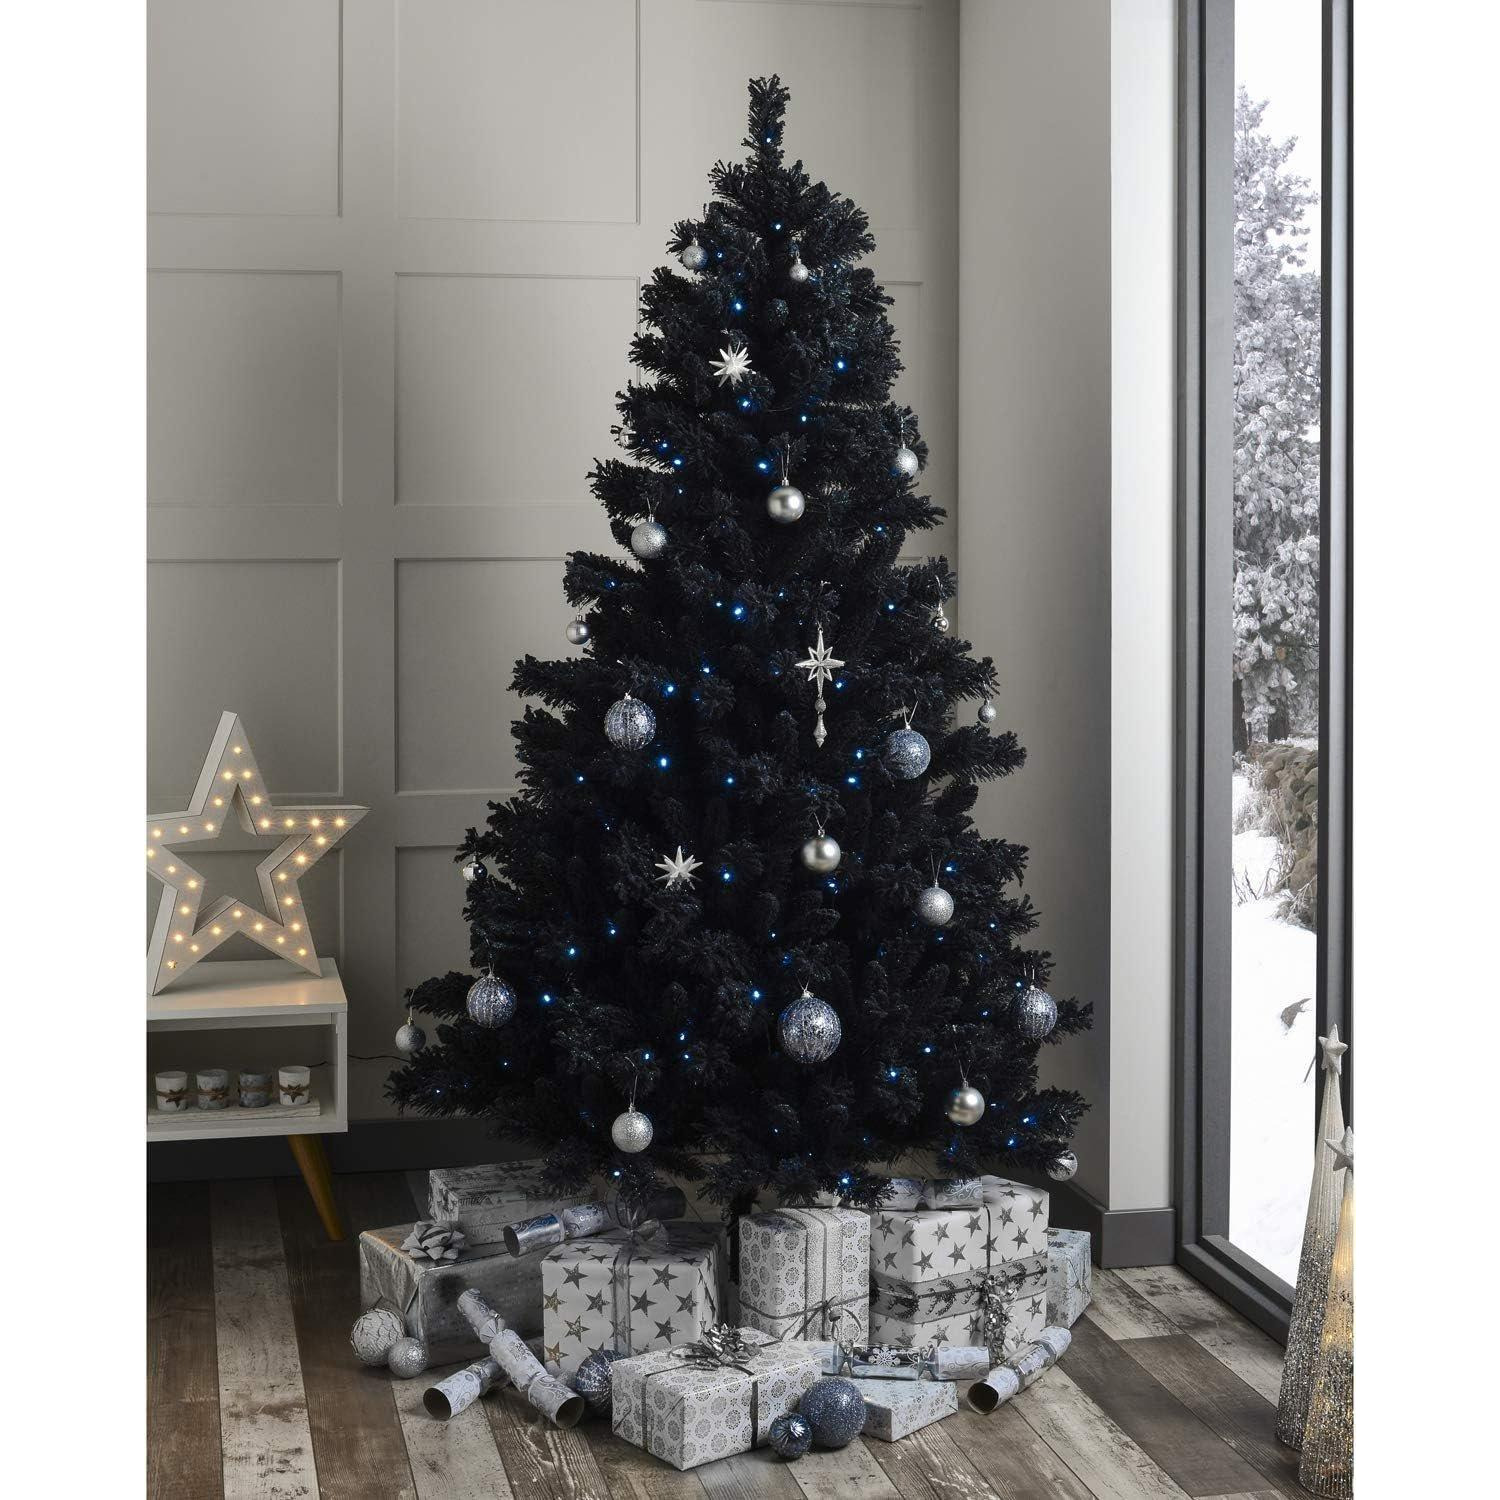 4FT Black Alaskan Pine Christmas Tree - image 1